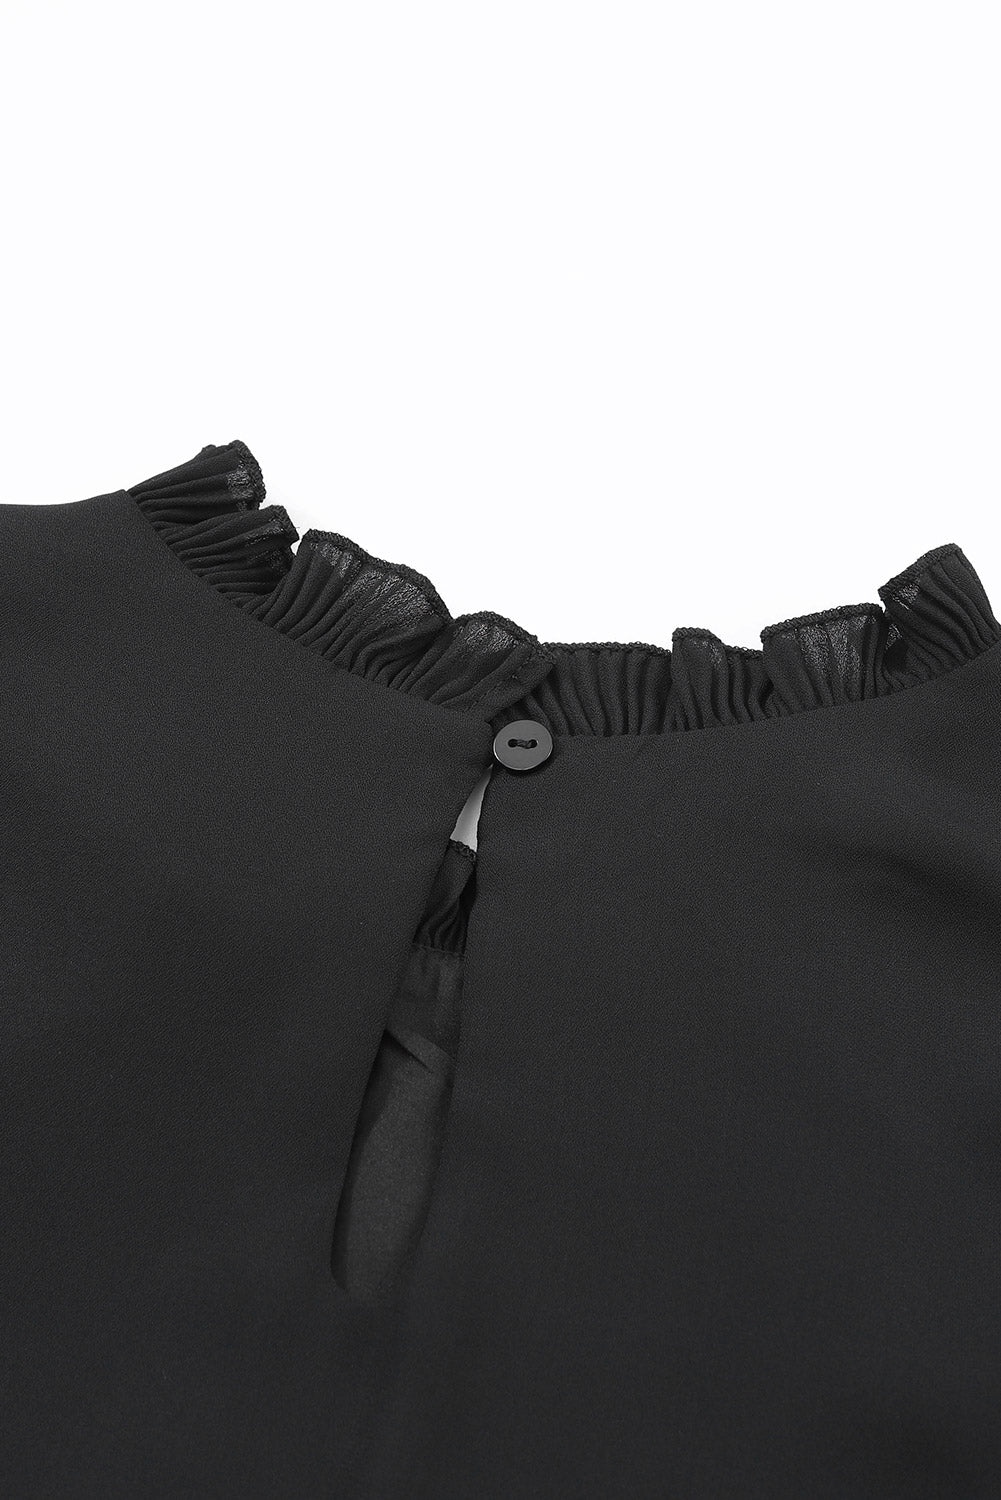 Crna bluza s plisiranim rubovima s gumbima i ključanicama